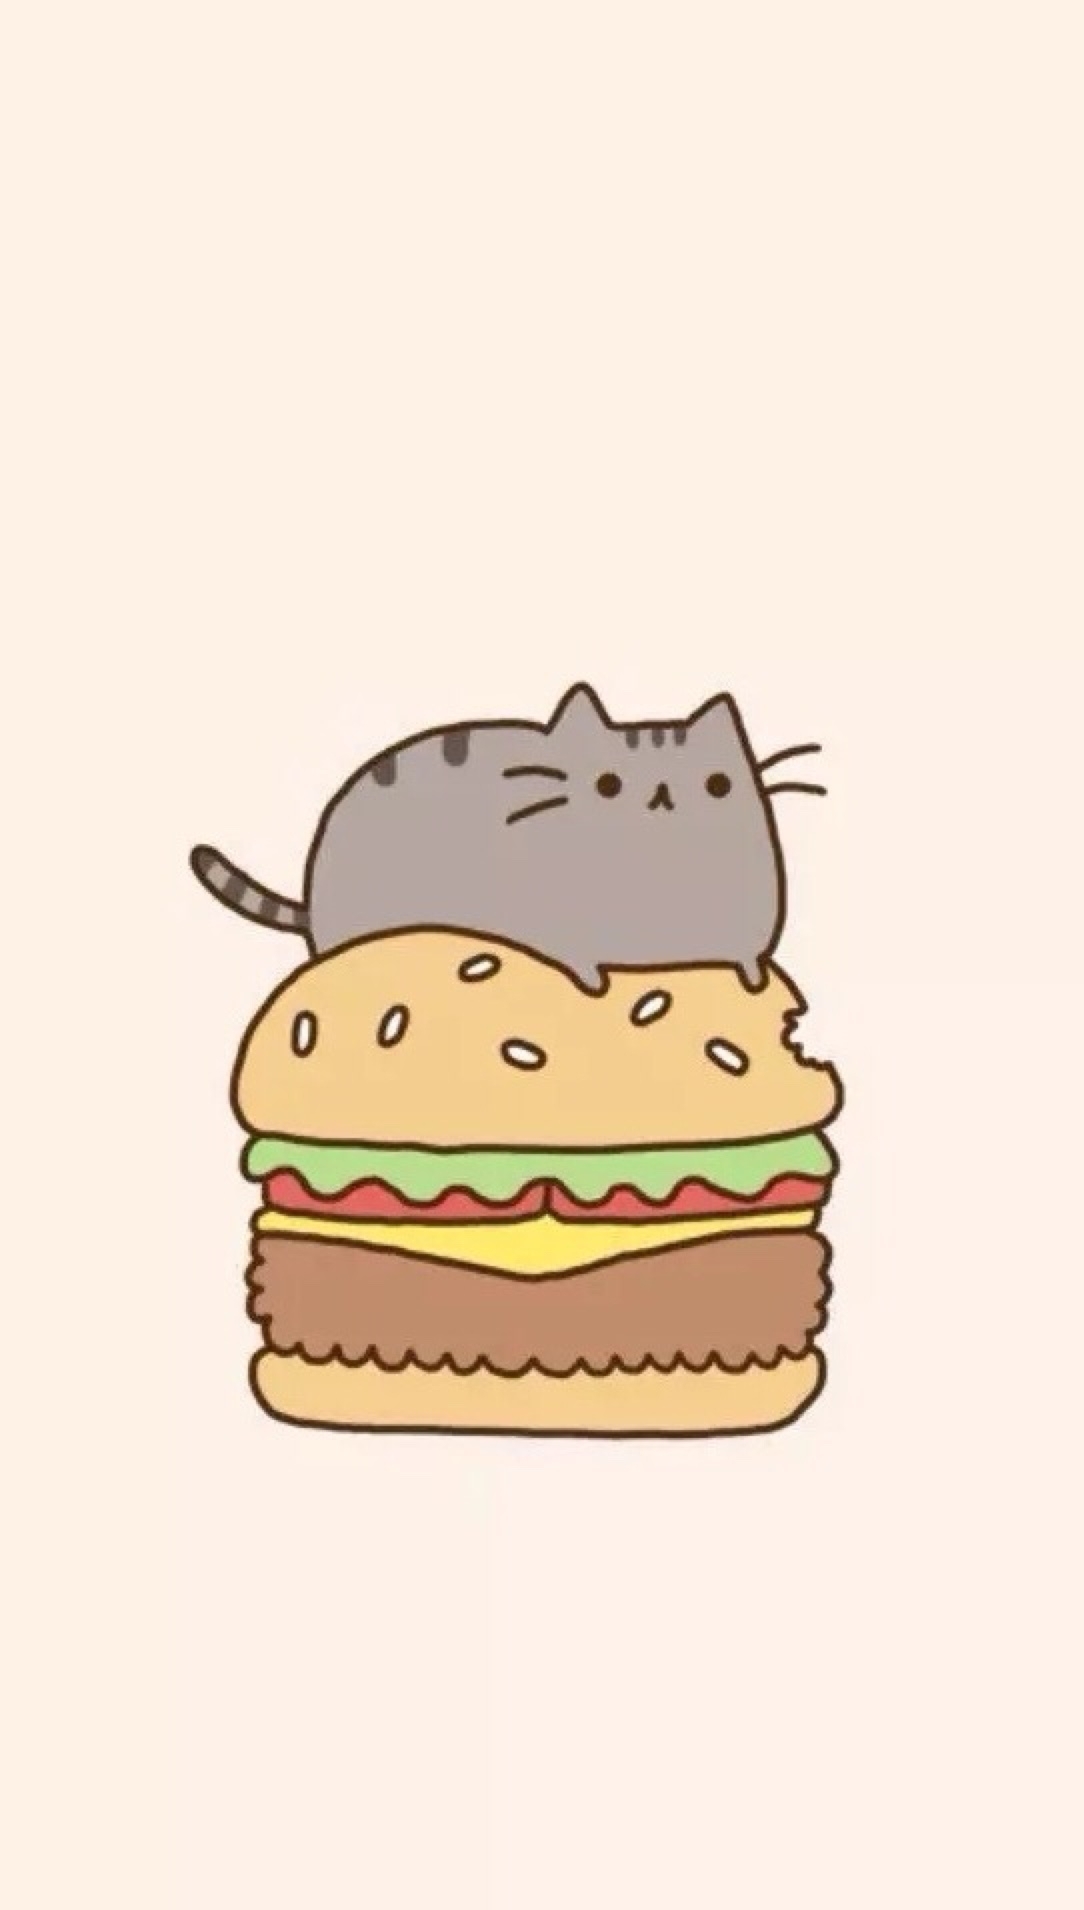 fond d'écran pusheen,cheeseburger,dessin animé,fast food,hamburger,aliments